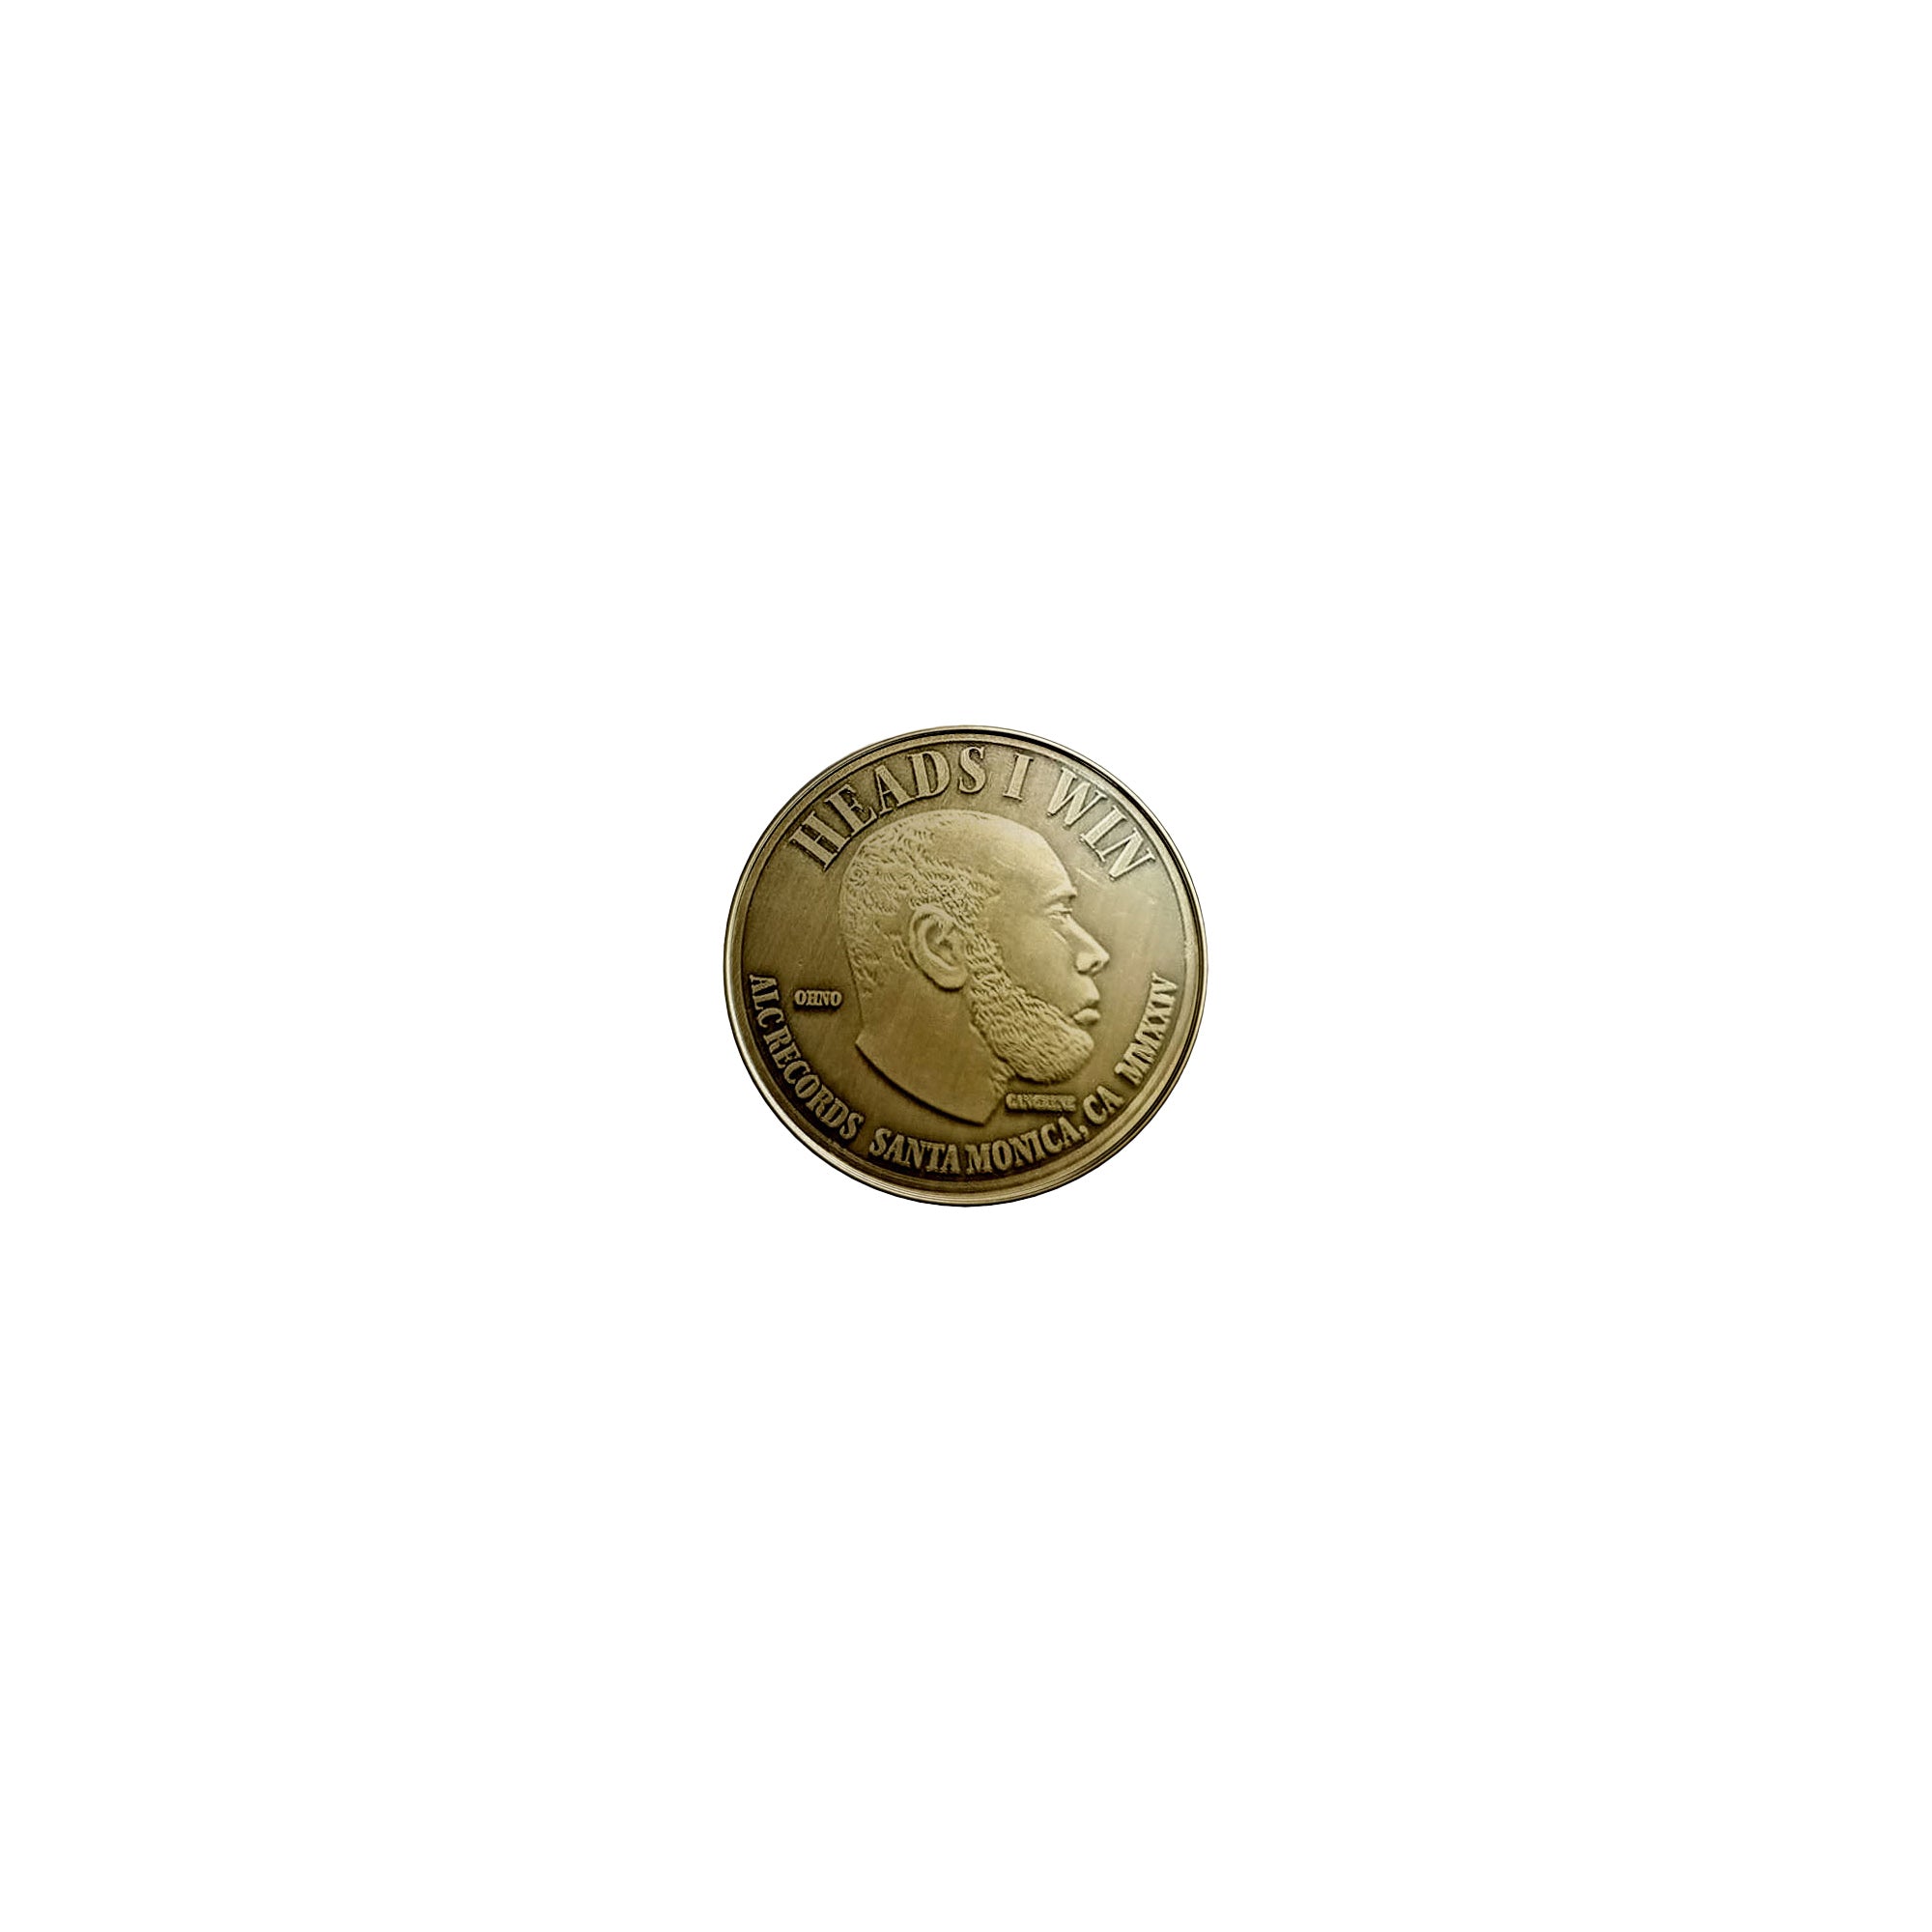 Hustler's Coin (Collectible Coin)